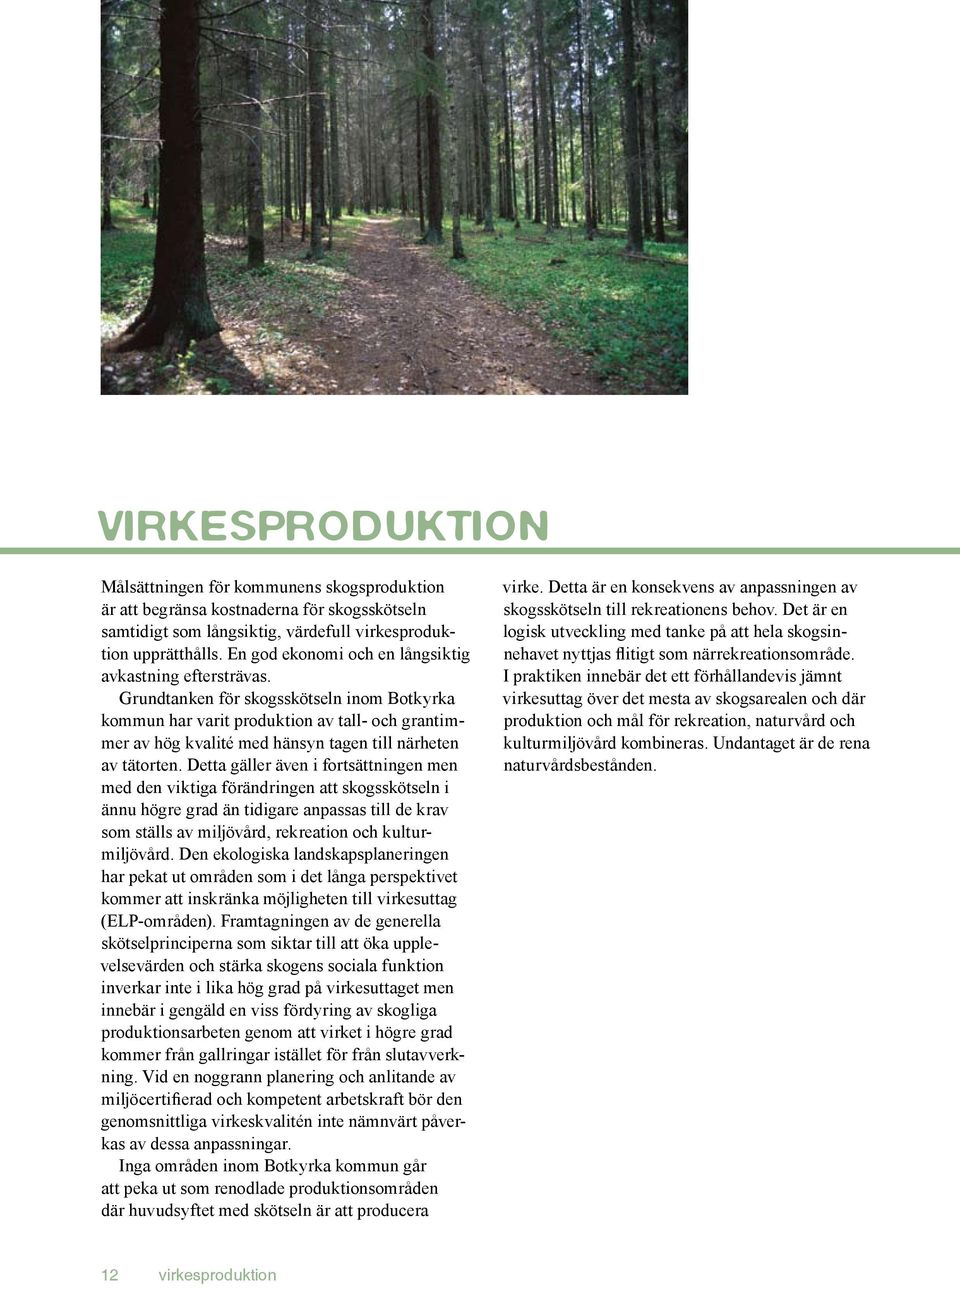 Grundtanken för skogsskötseln inom Botkyrka kommun har varit produktion av tall- och grantimmer av hög kvalité med hänsyn tagen till närheten av tätorten.